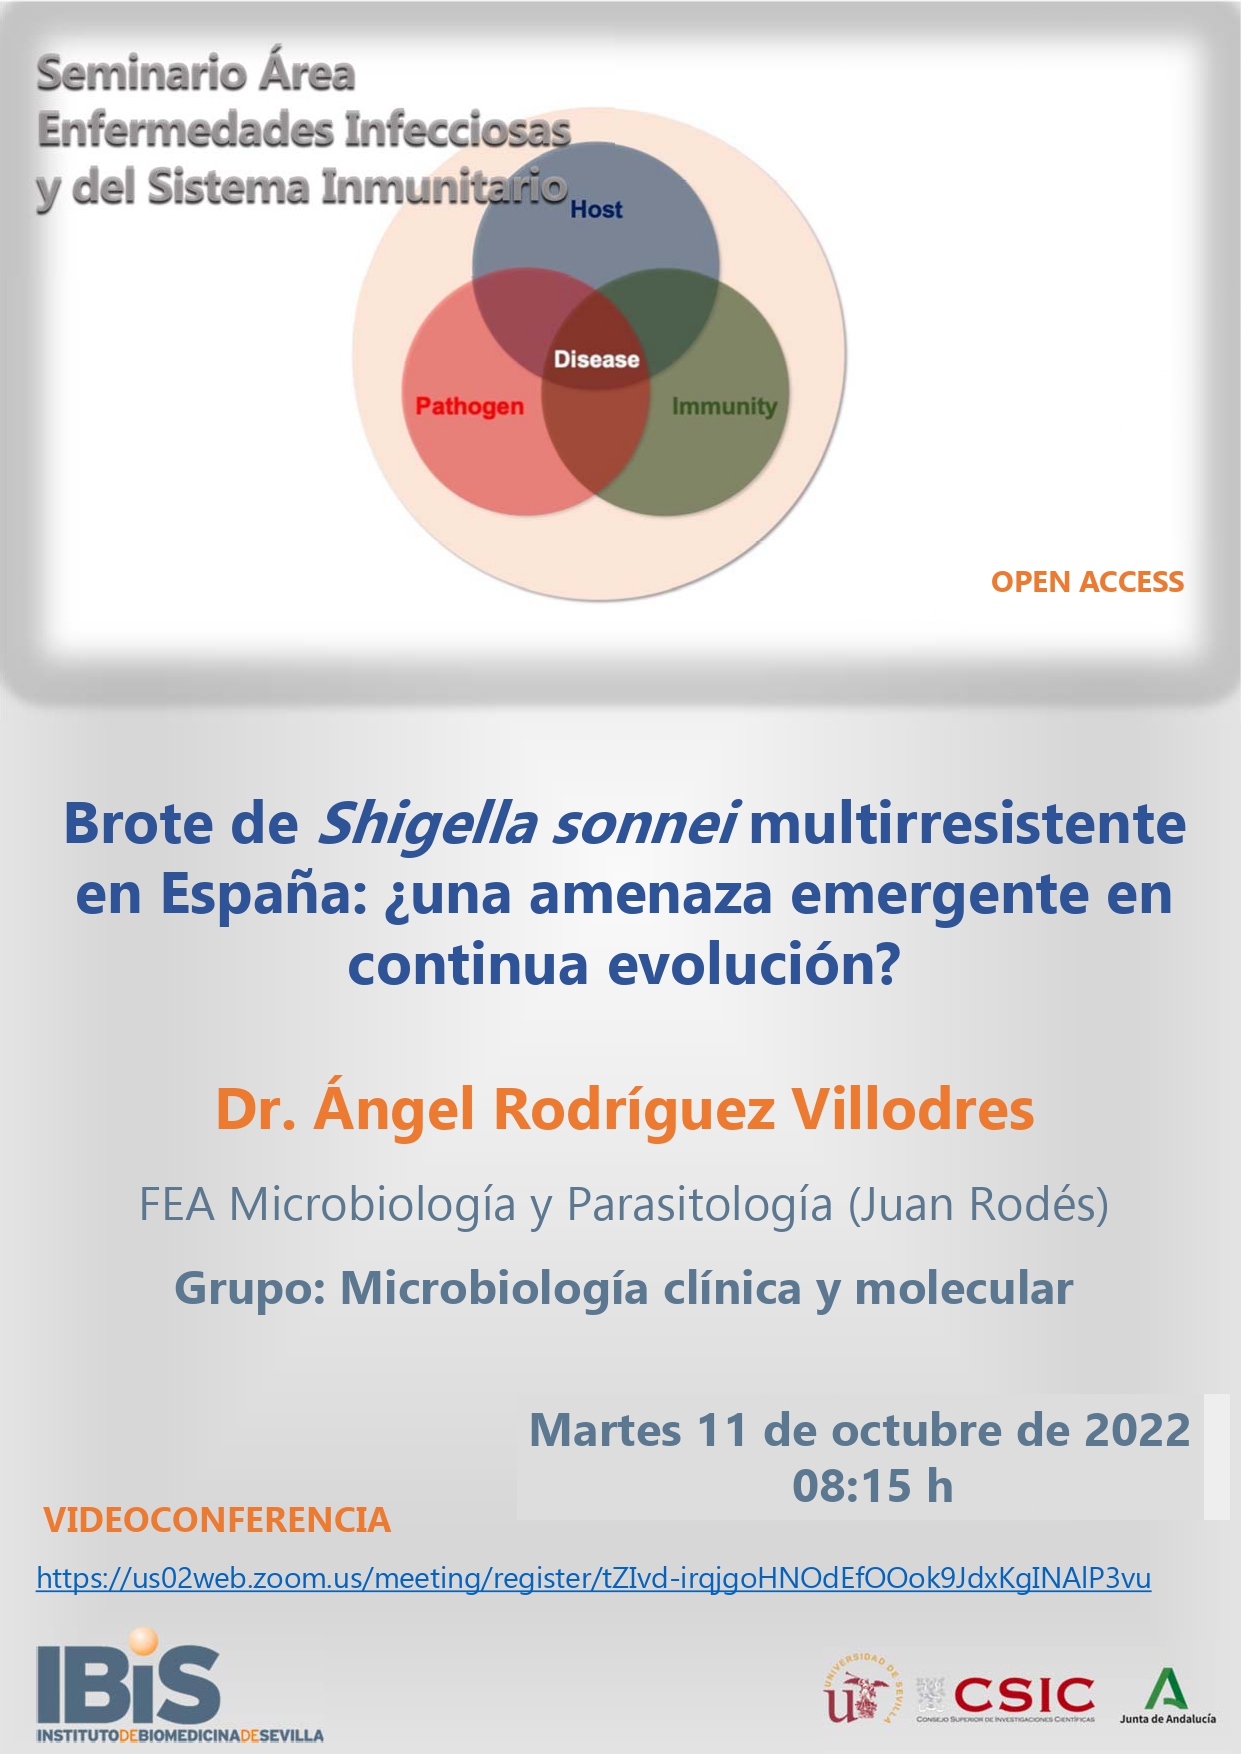 Poster: Brote de Shigella sonnei multirresistente en España: ¿una amenaza emergente en continua evolución?